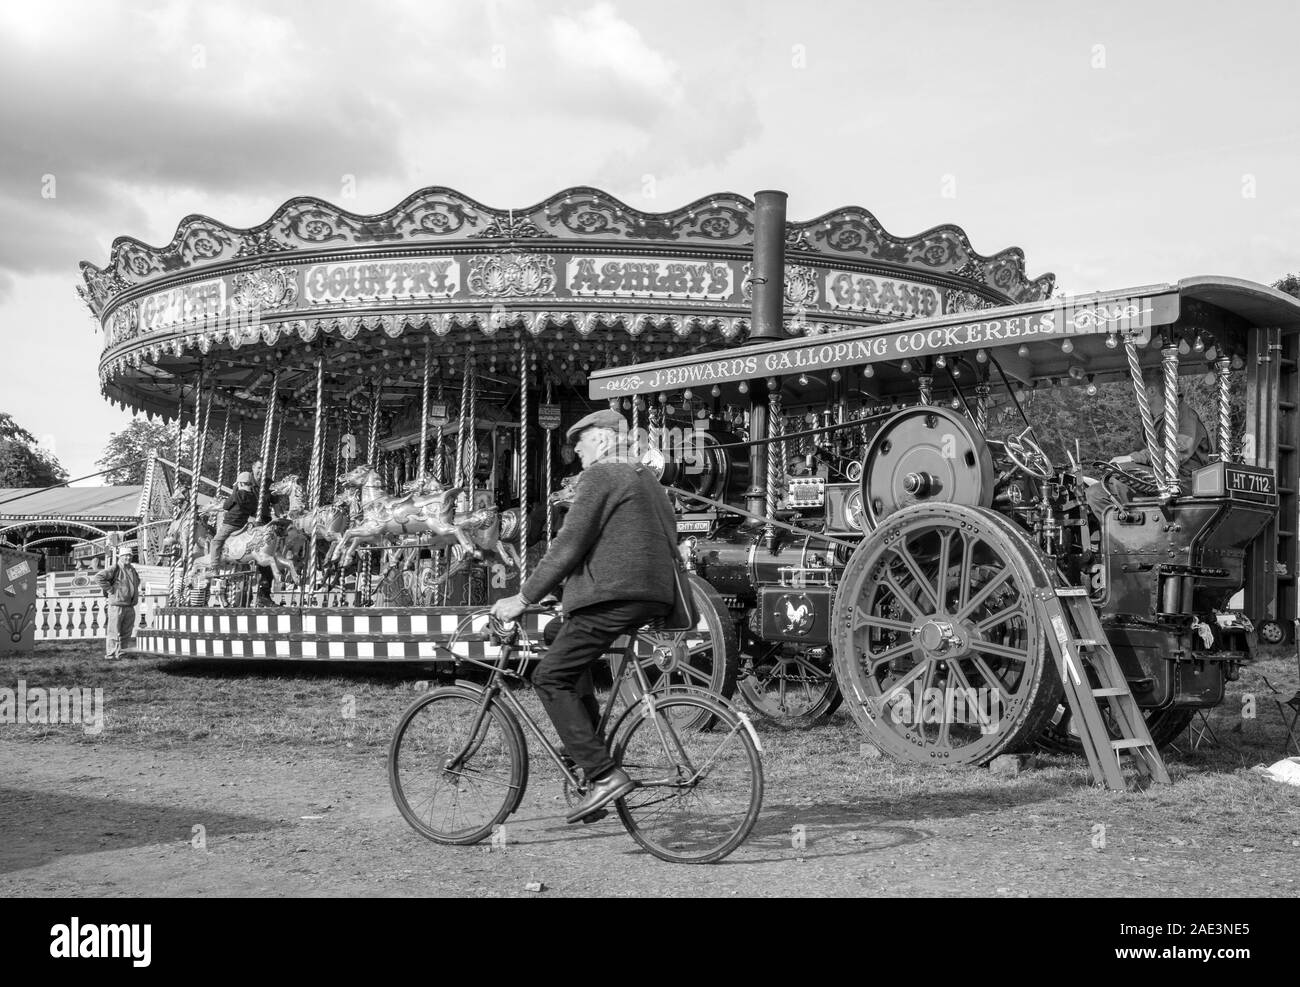 Alter Mann, der mit dem Fahrrad durch einen alten dampfbetriebenen Traditionsmarkt mit Karussell-Kreisverkehr und Zugmaschine Malpas England fährt Stockfoto